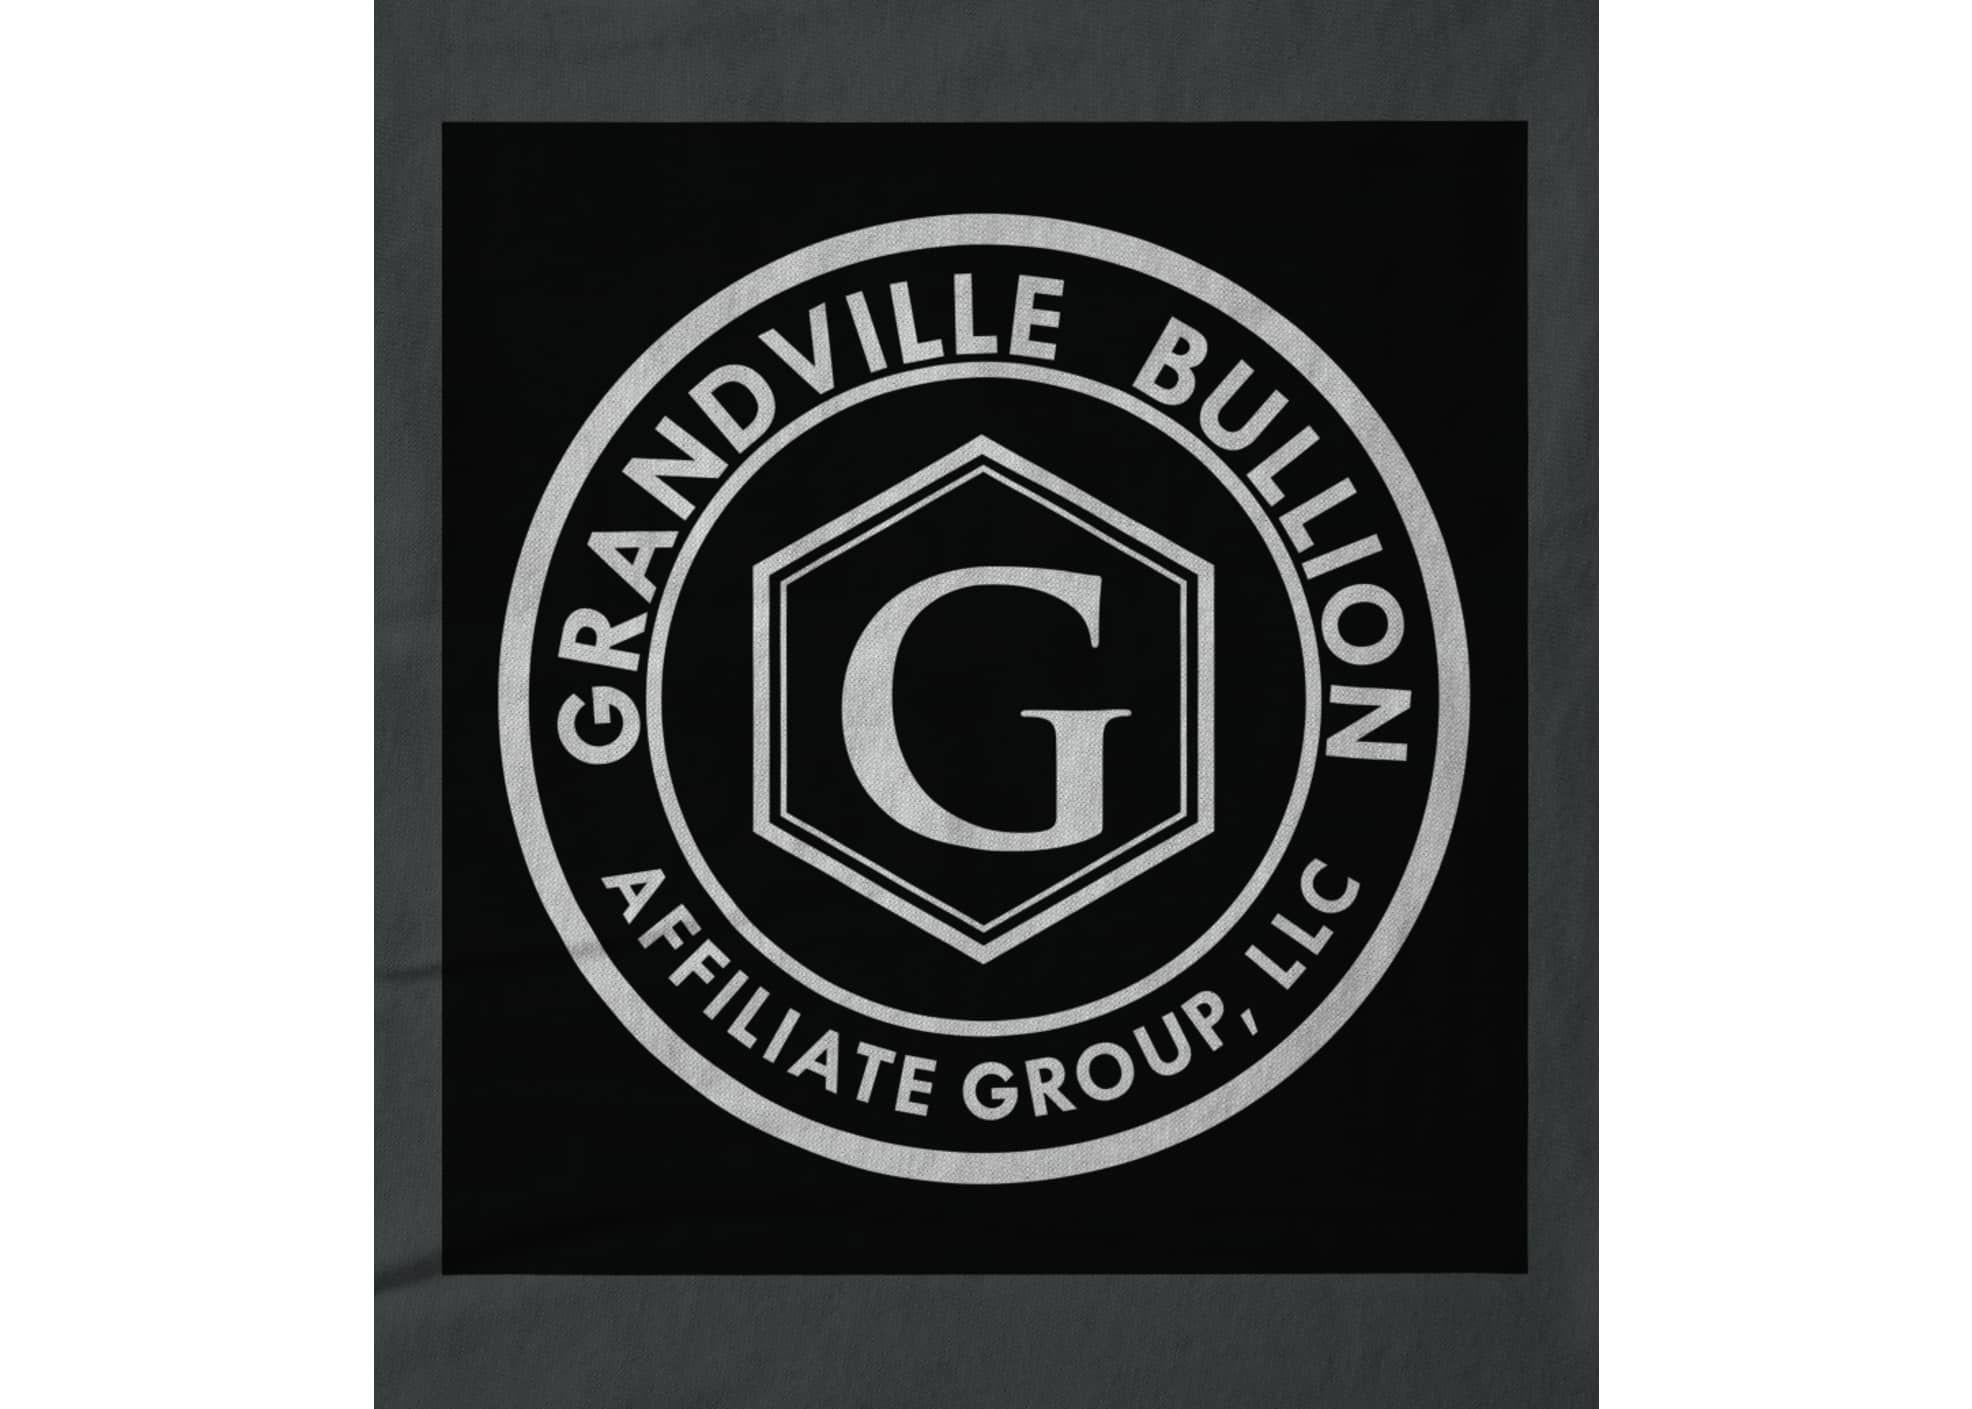 Grandville bullion group llc black and white logo 1629988597